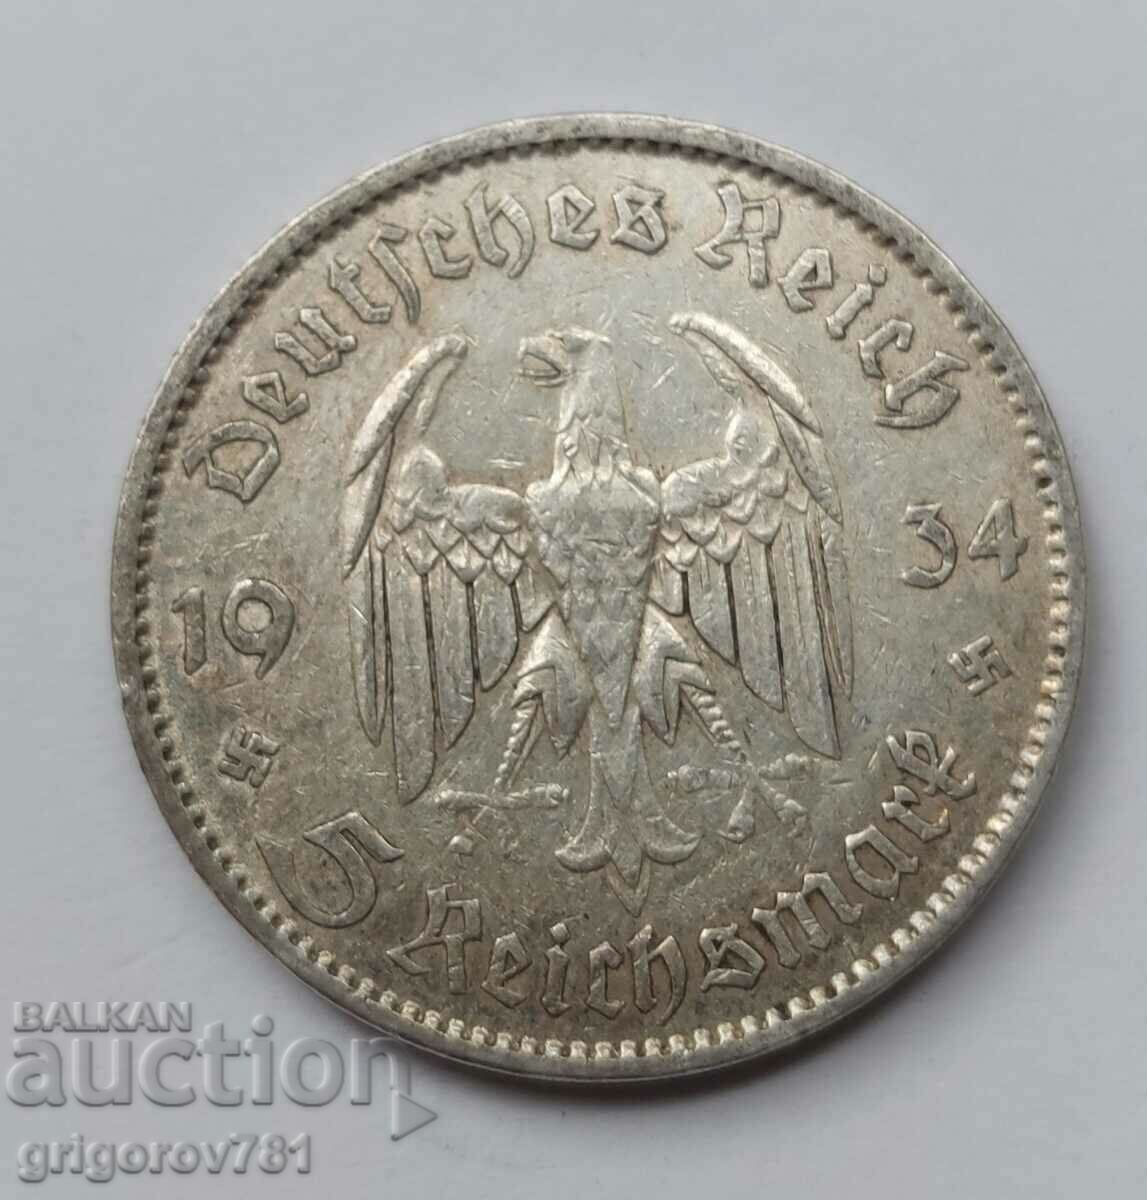 5 mărci de argint Germania 1934 A III Reich Monedă de argint #8